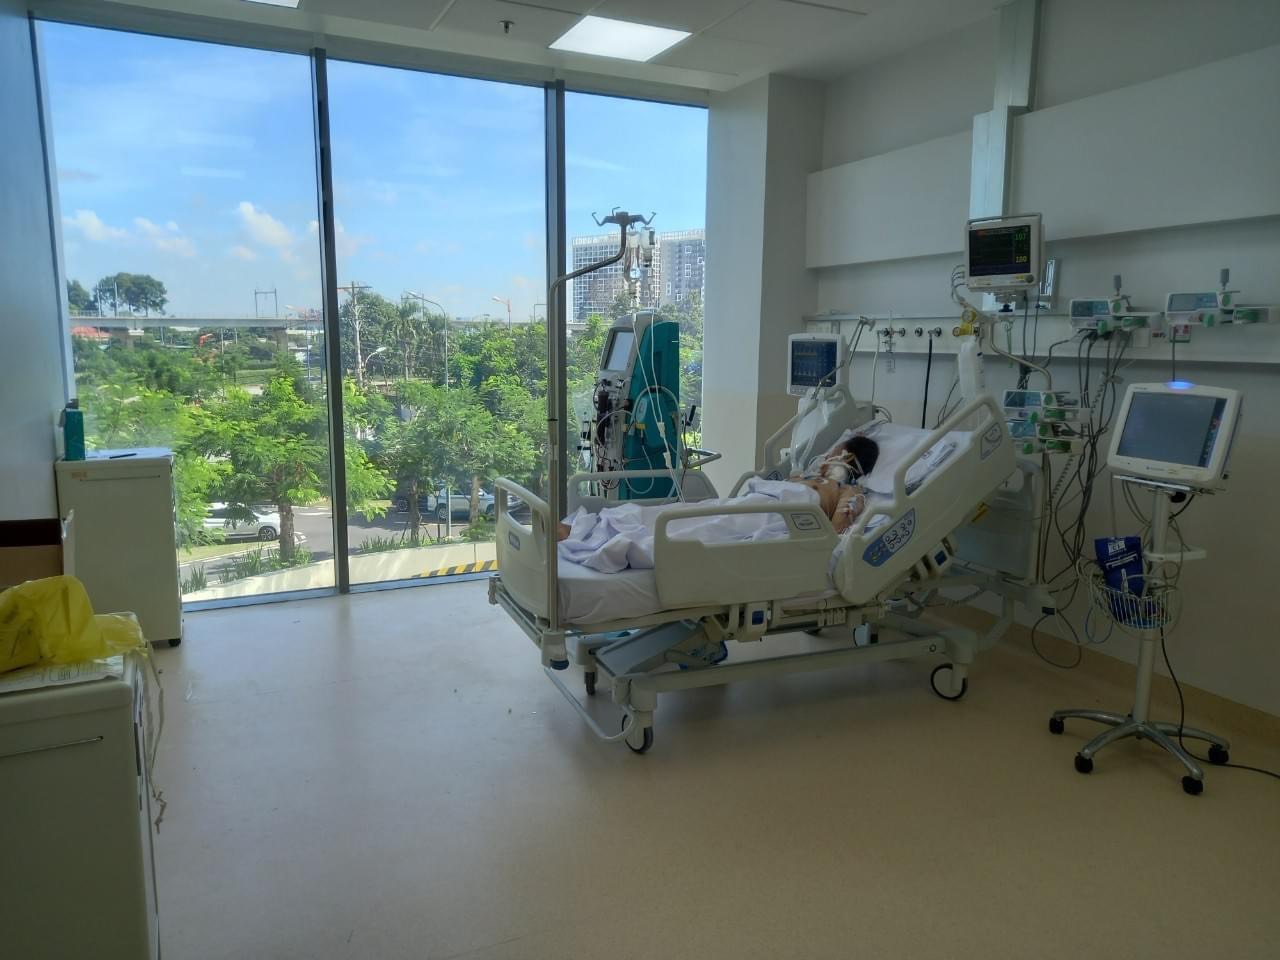 Bệnh viện Hồi sức Covid-19 căng mình điều trị bệnh nhân nguy kịch - Ảnh 1.